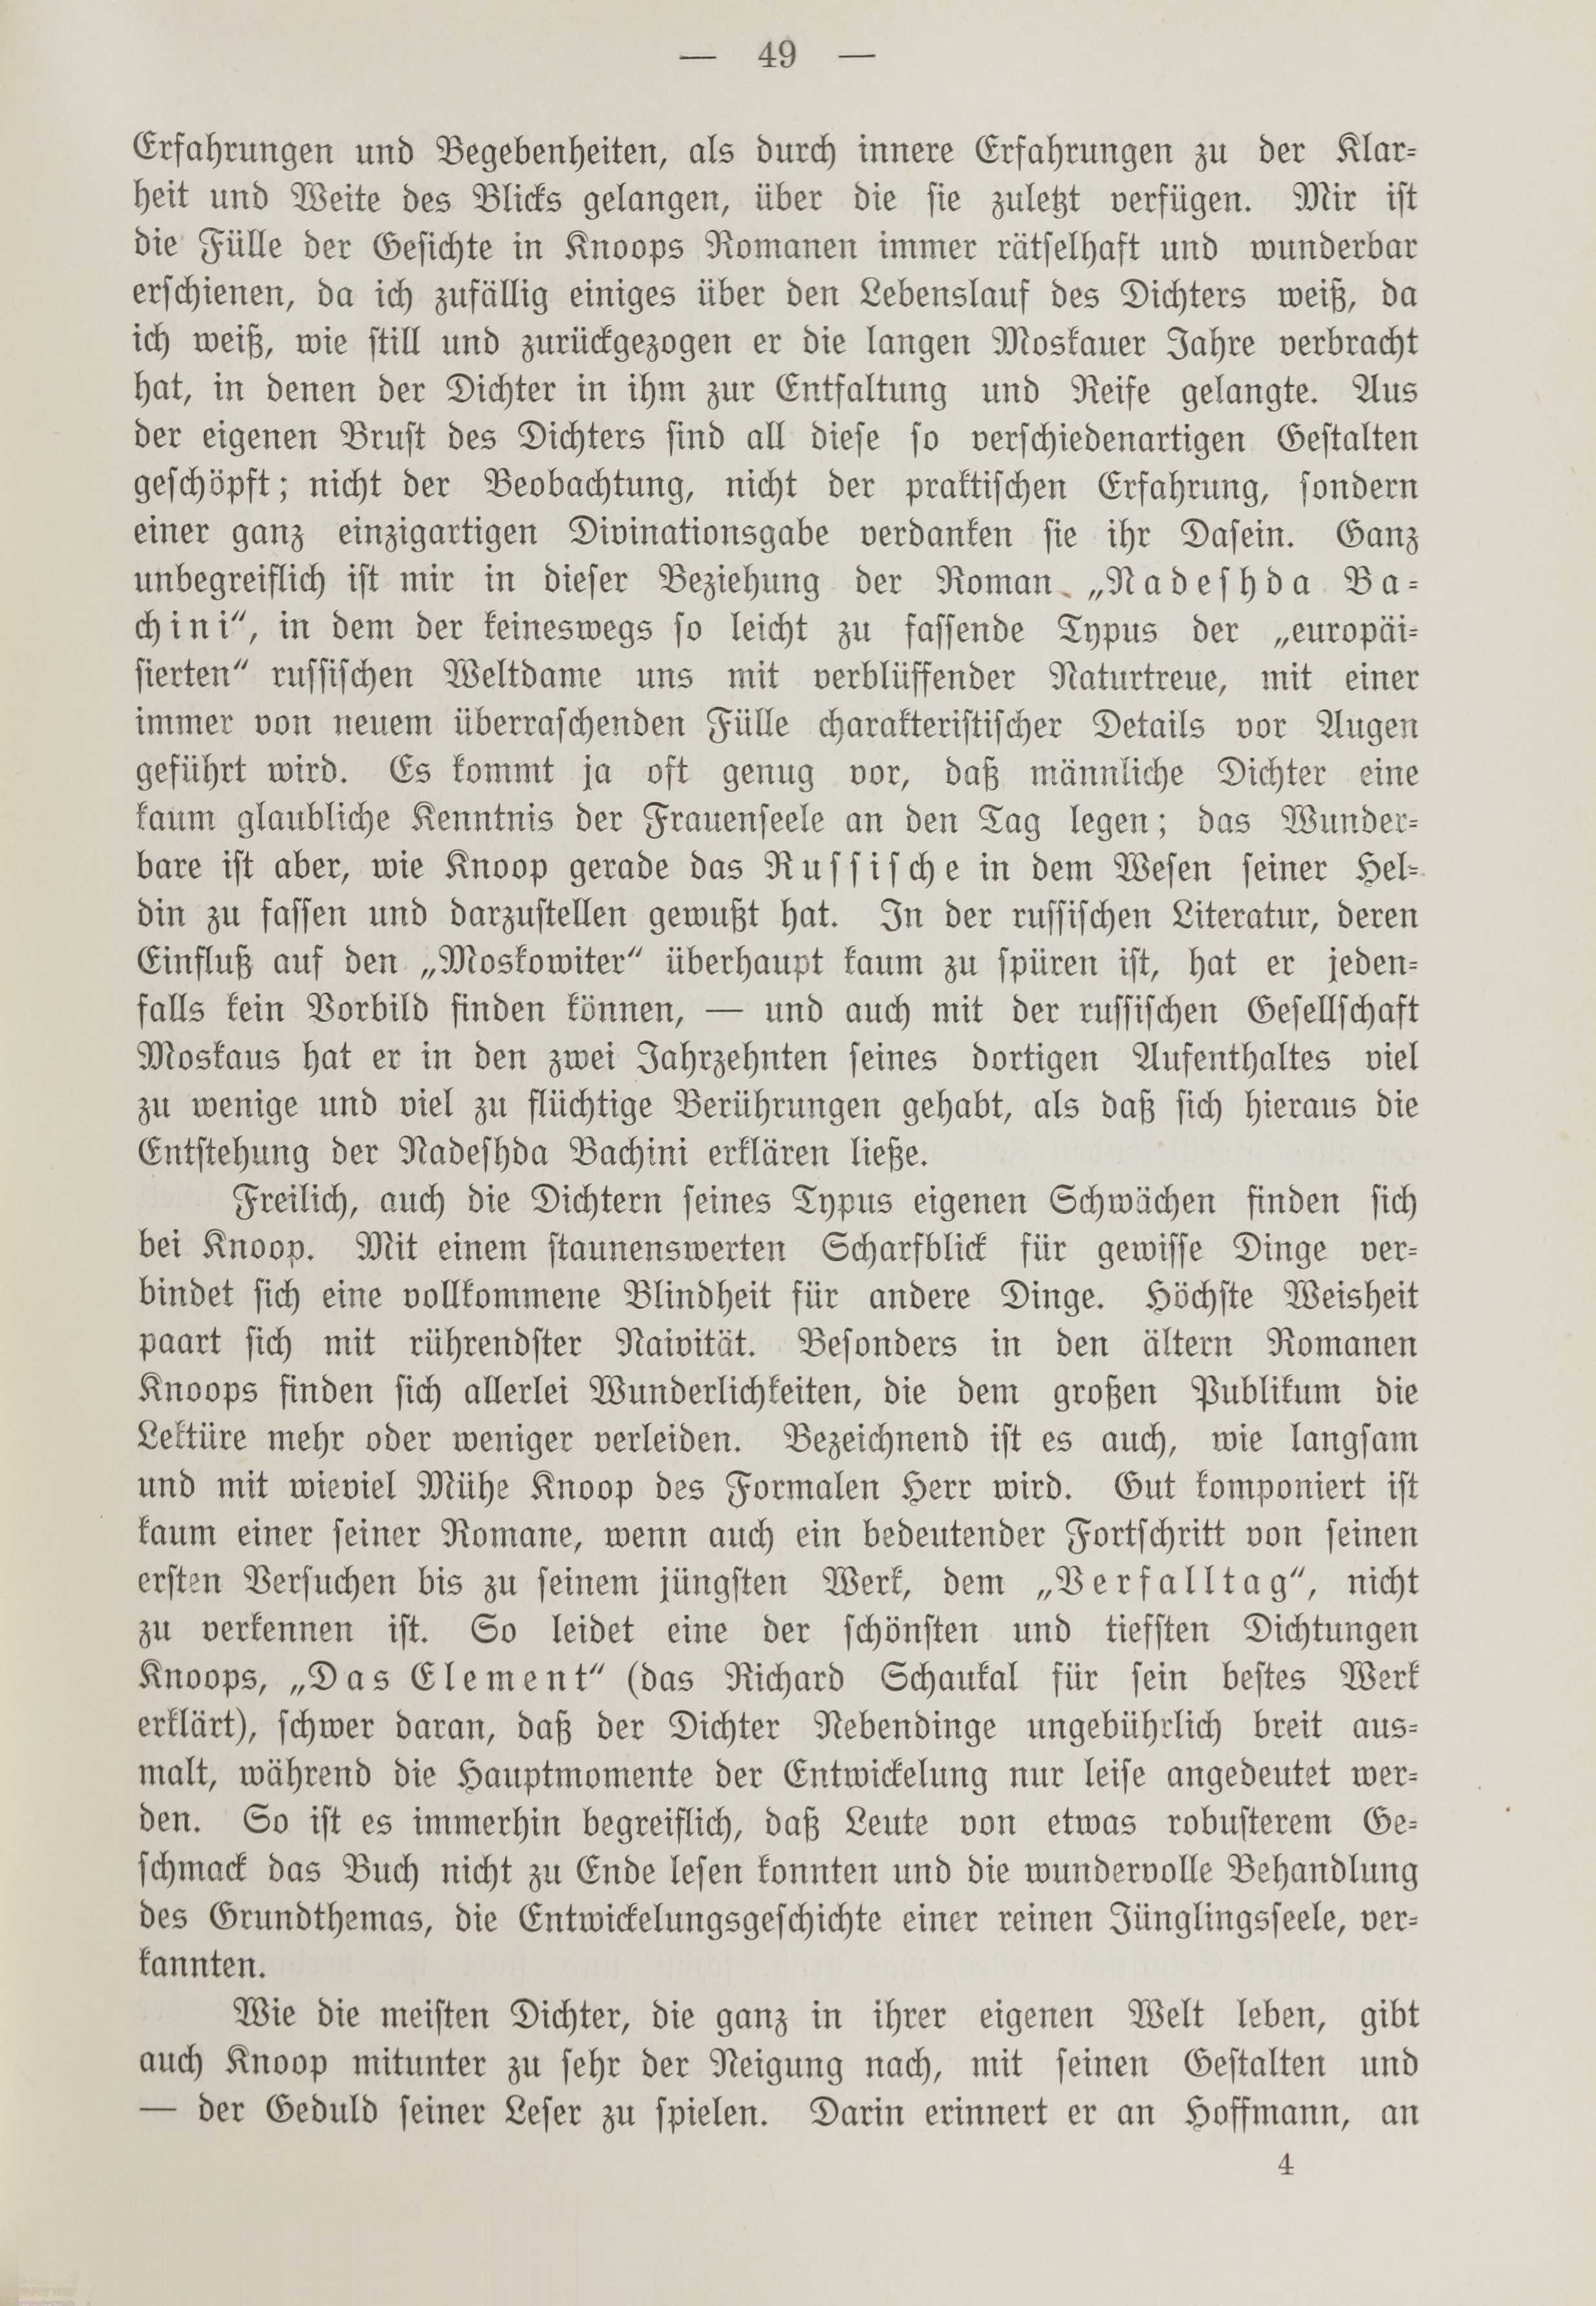 Deutsche Monatsschrift für Russland [1] (1912) | 56. (49) Основной текст